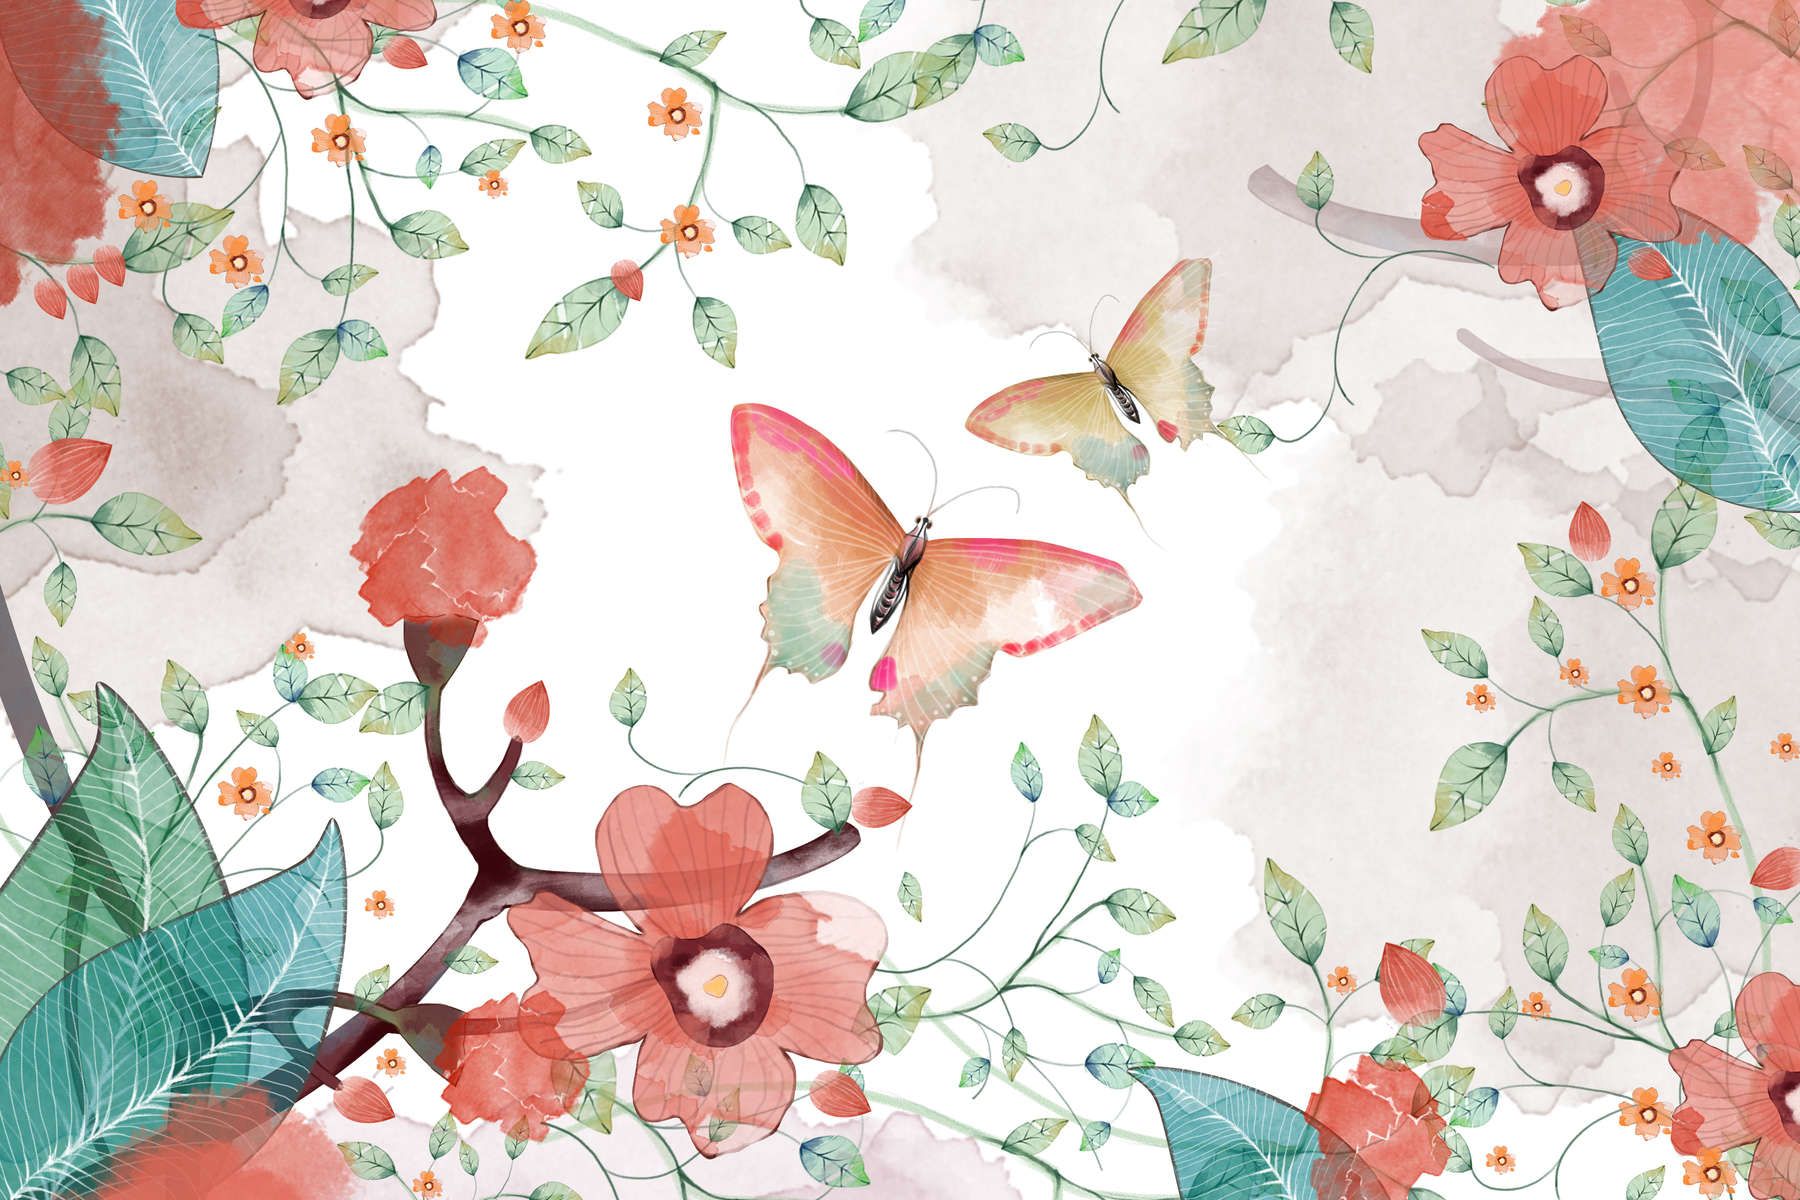             Fototapete floral mit Blättern und Schmetterlingen – Glattes & mattes Vlies
        